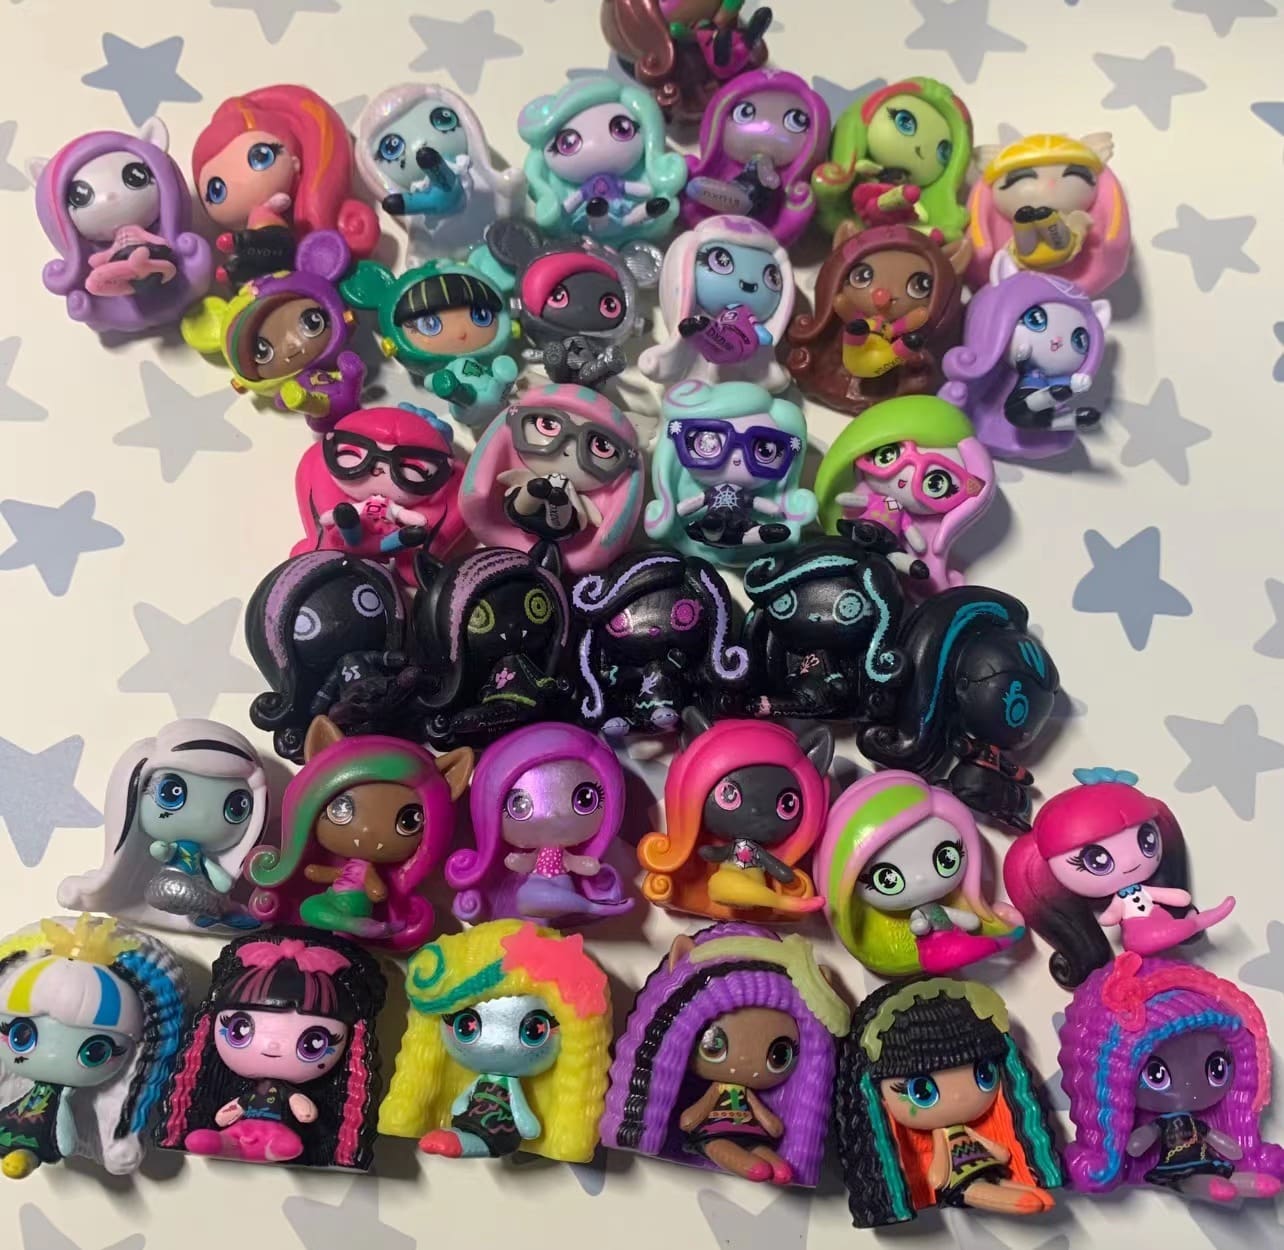 Mini Monster High Dolls Toy for Children Gift